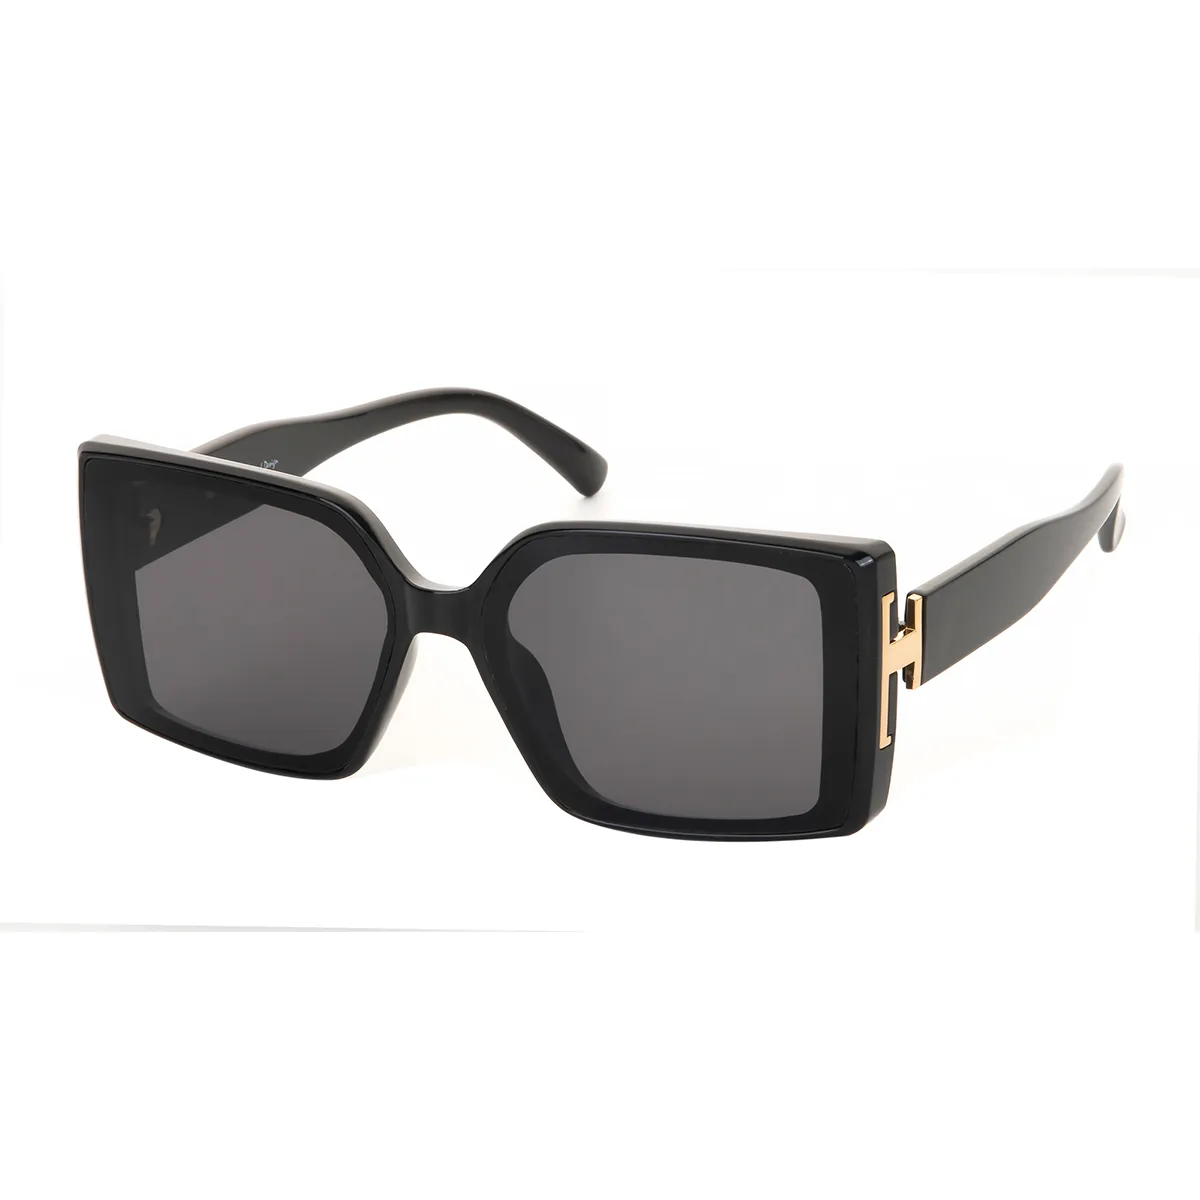 Baro - Square Black Sunglasses for Women